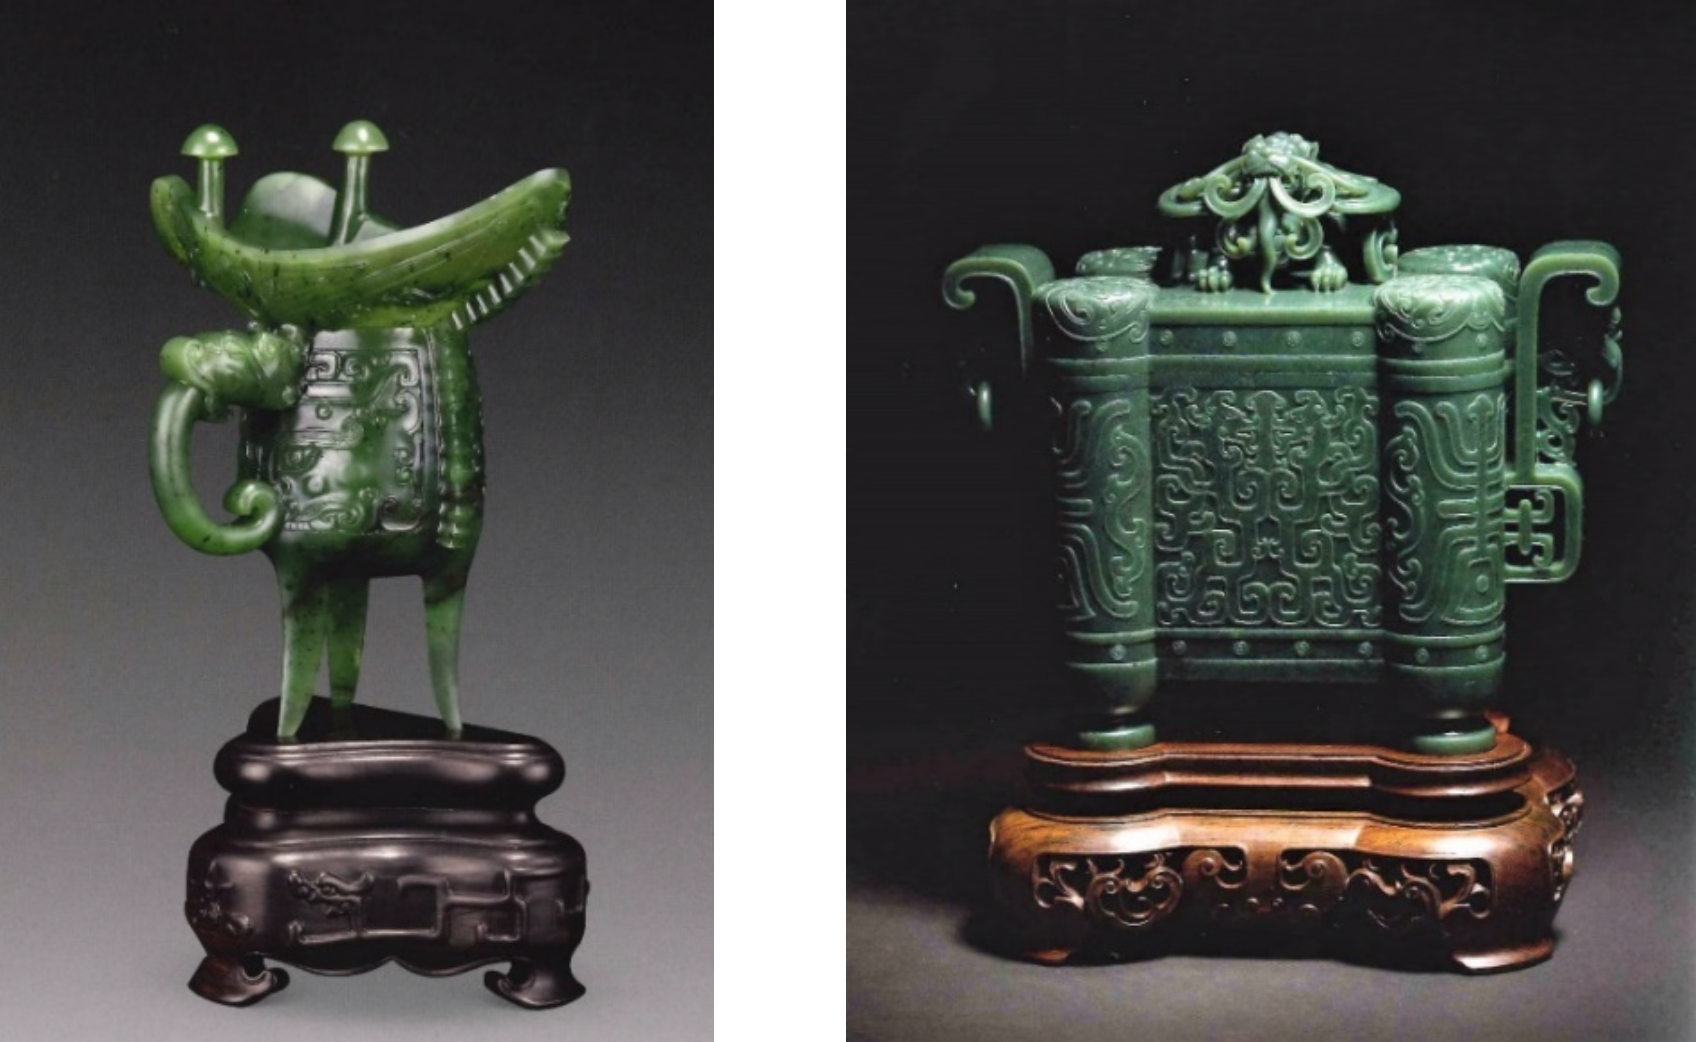 中国玉雕仿古器皿与加碧渊源